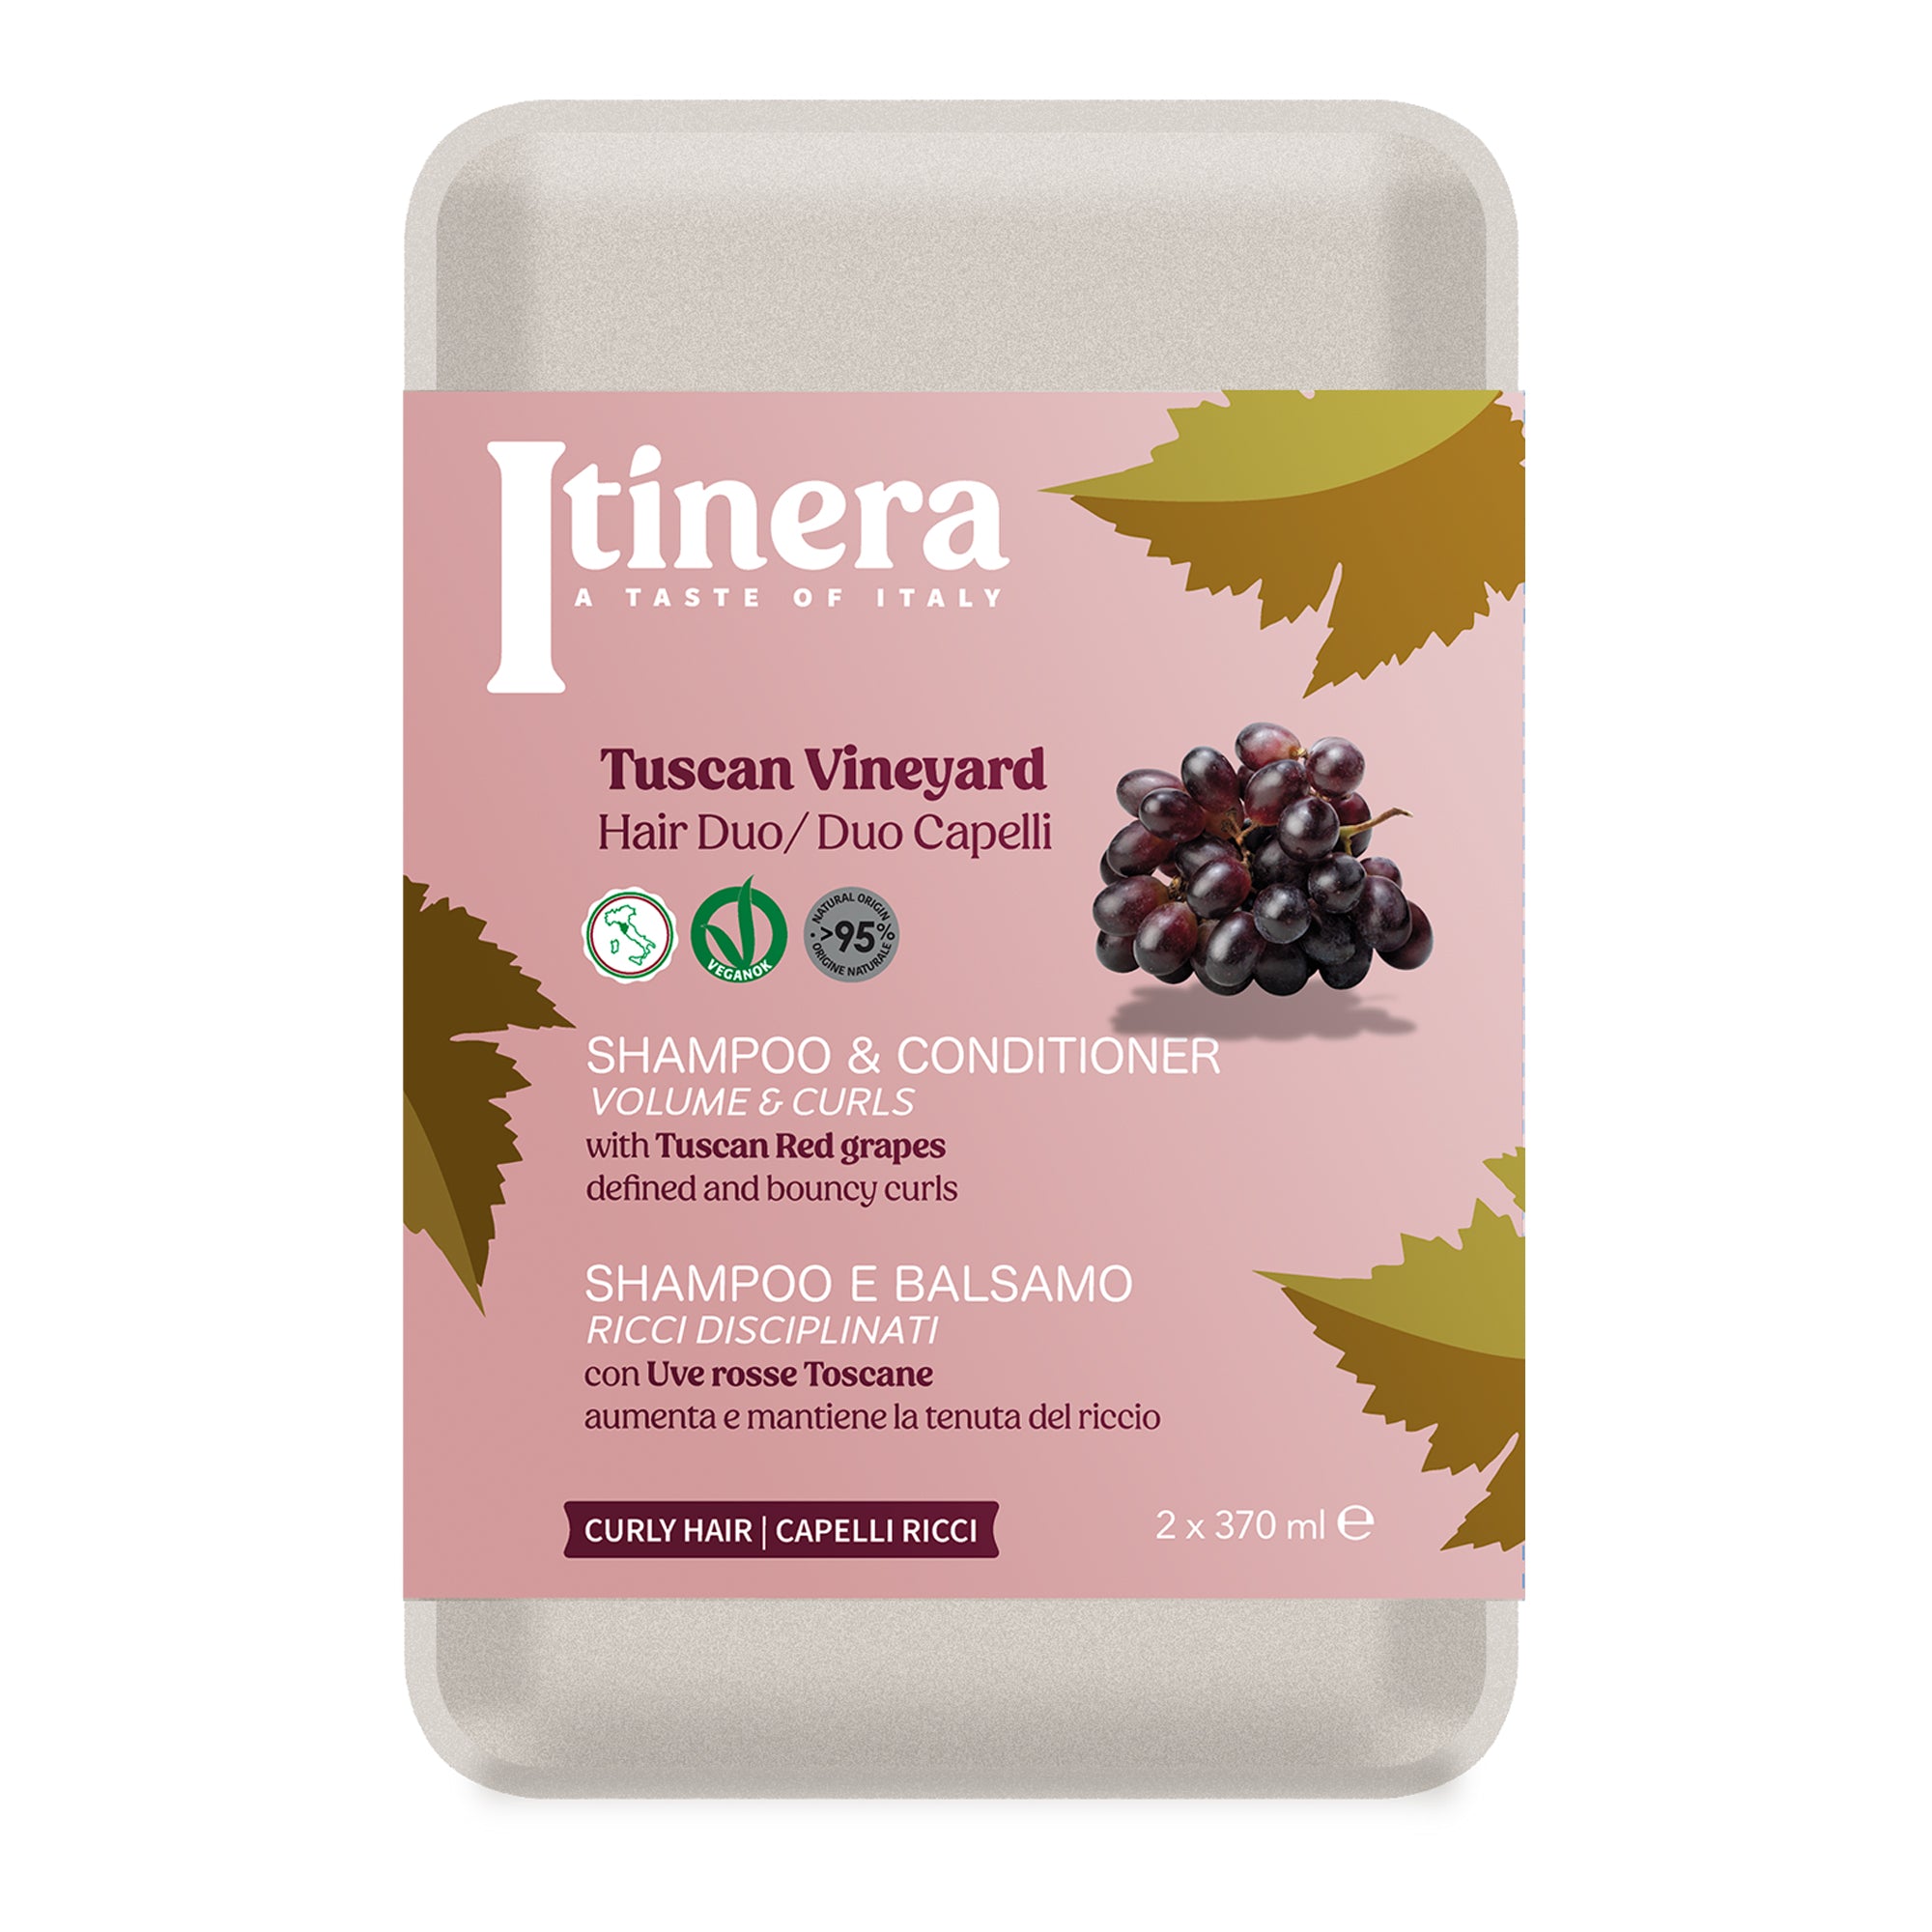 Itinera Tuscan Vineyard Kit (2 x 370 ml)